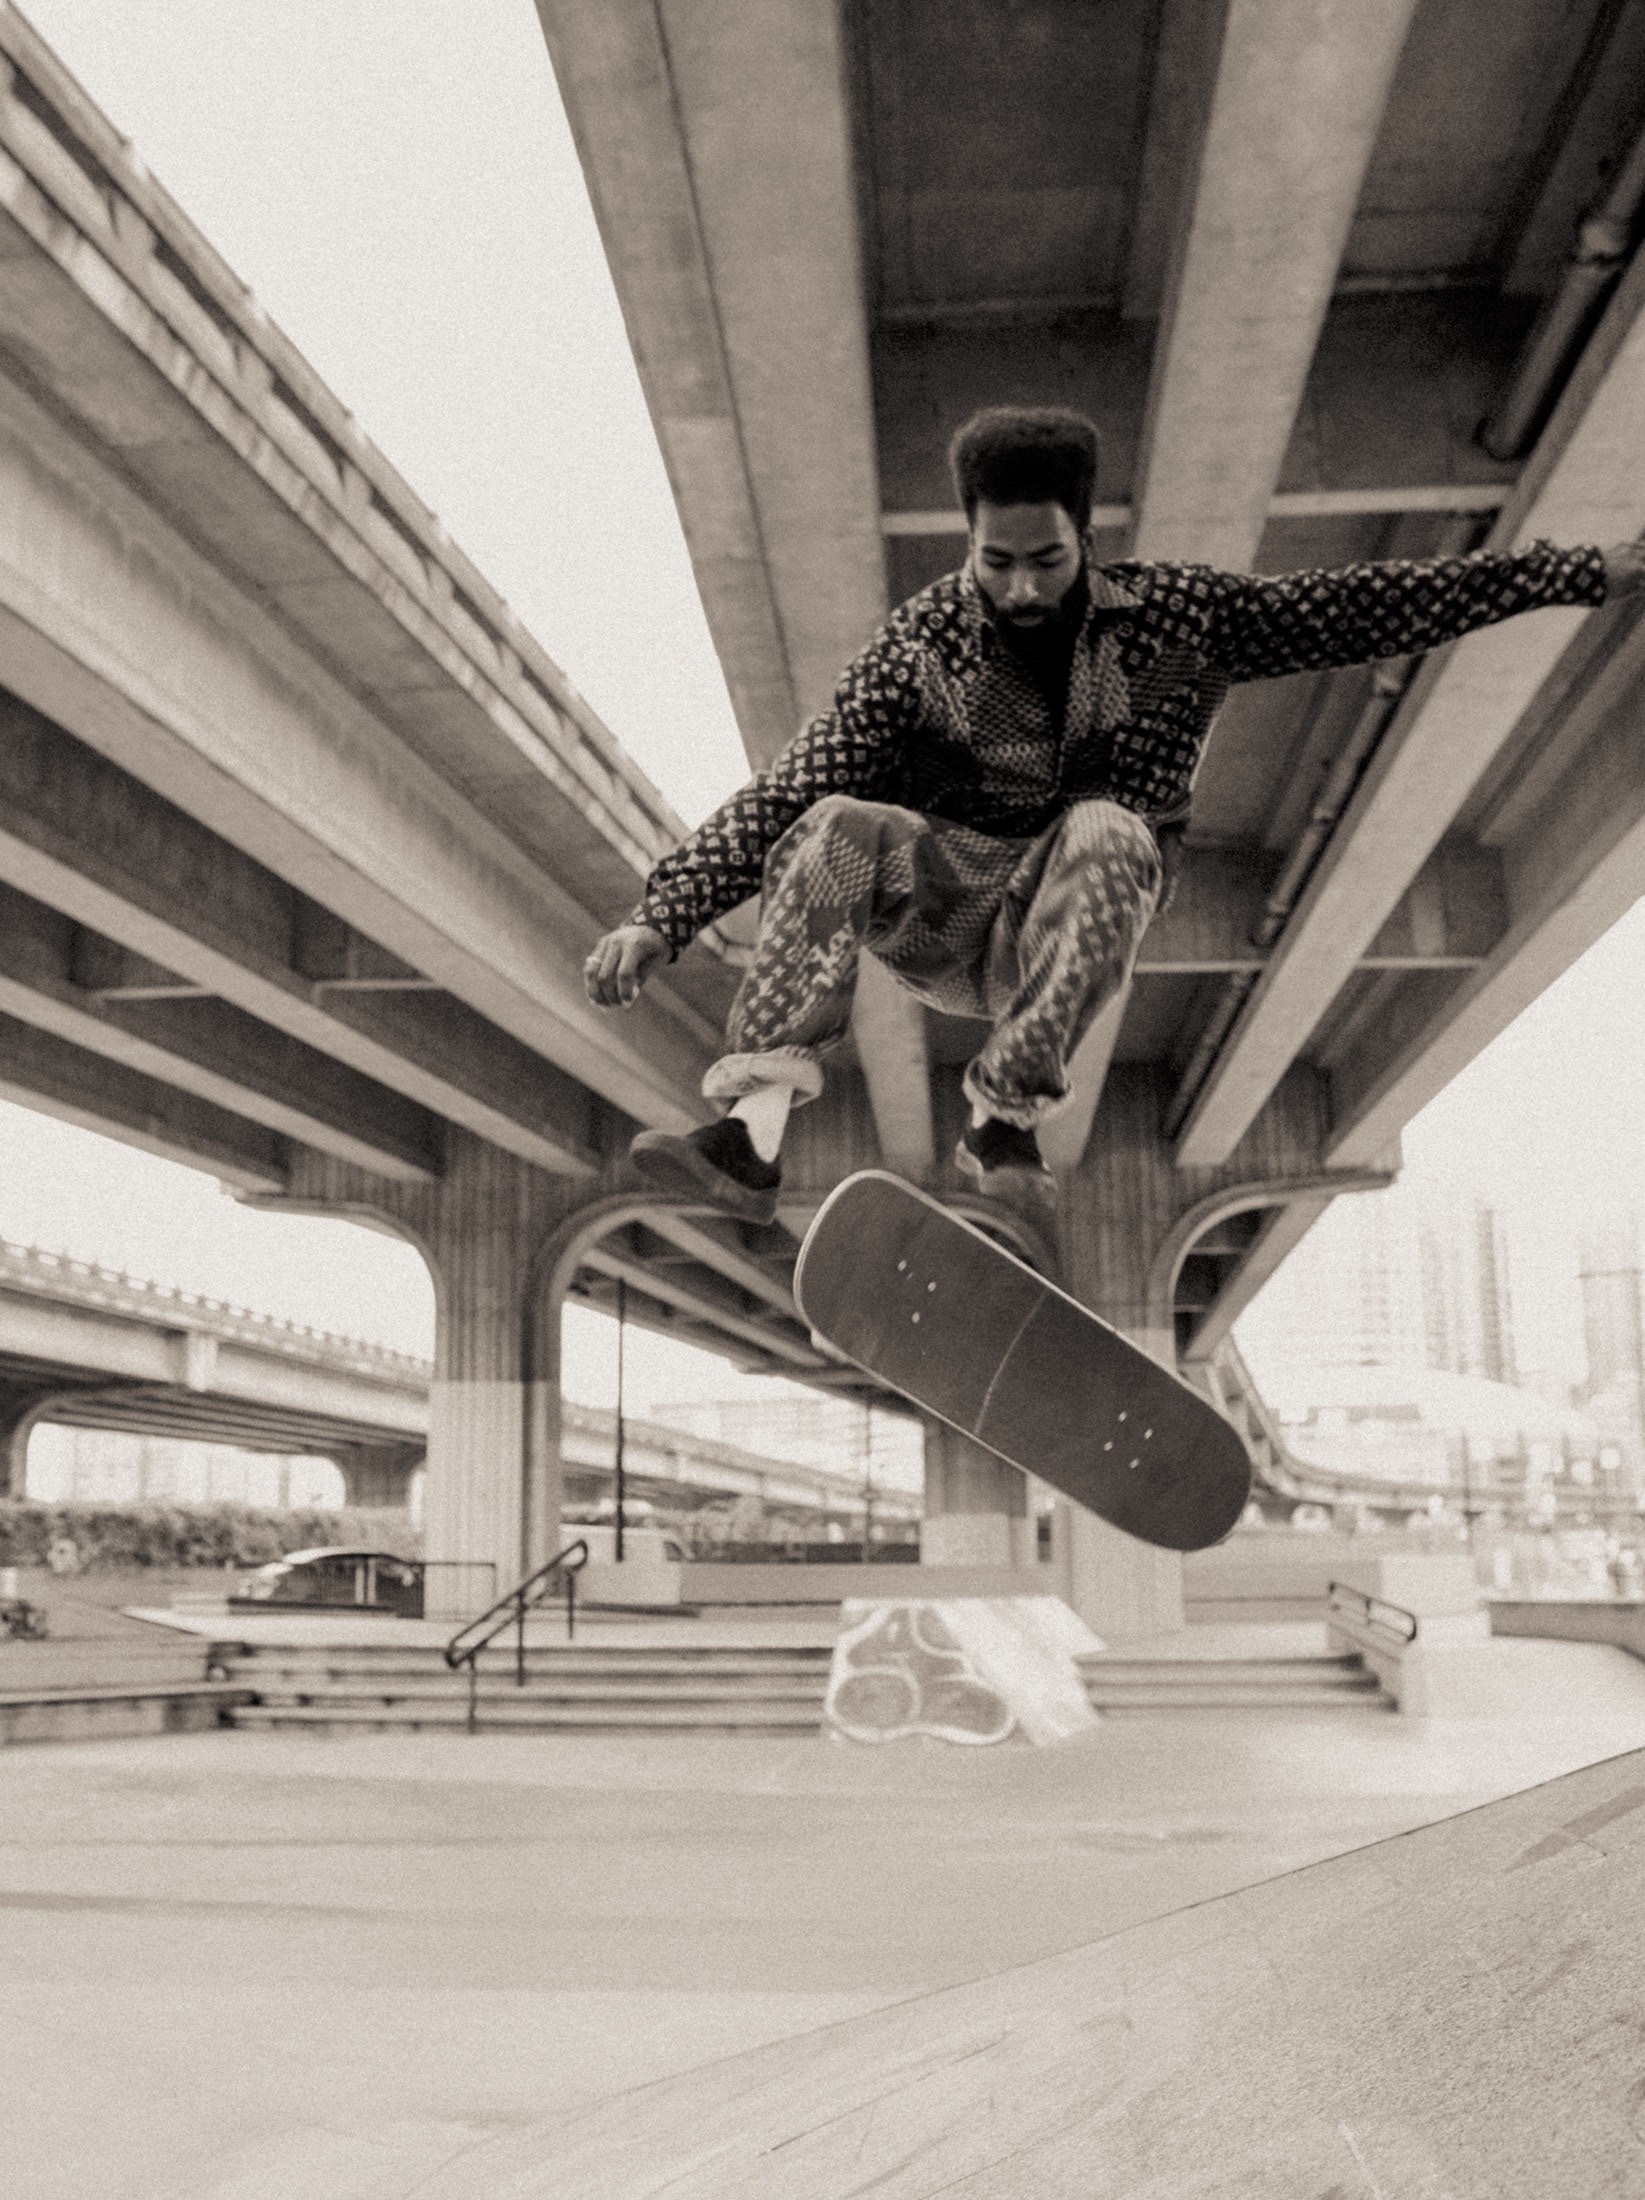 Ovrnundr on Instagram: Virgil Abloh skateboarding 🛹 Video